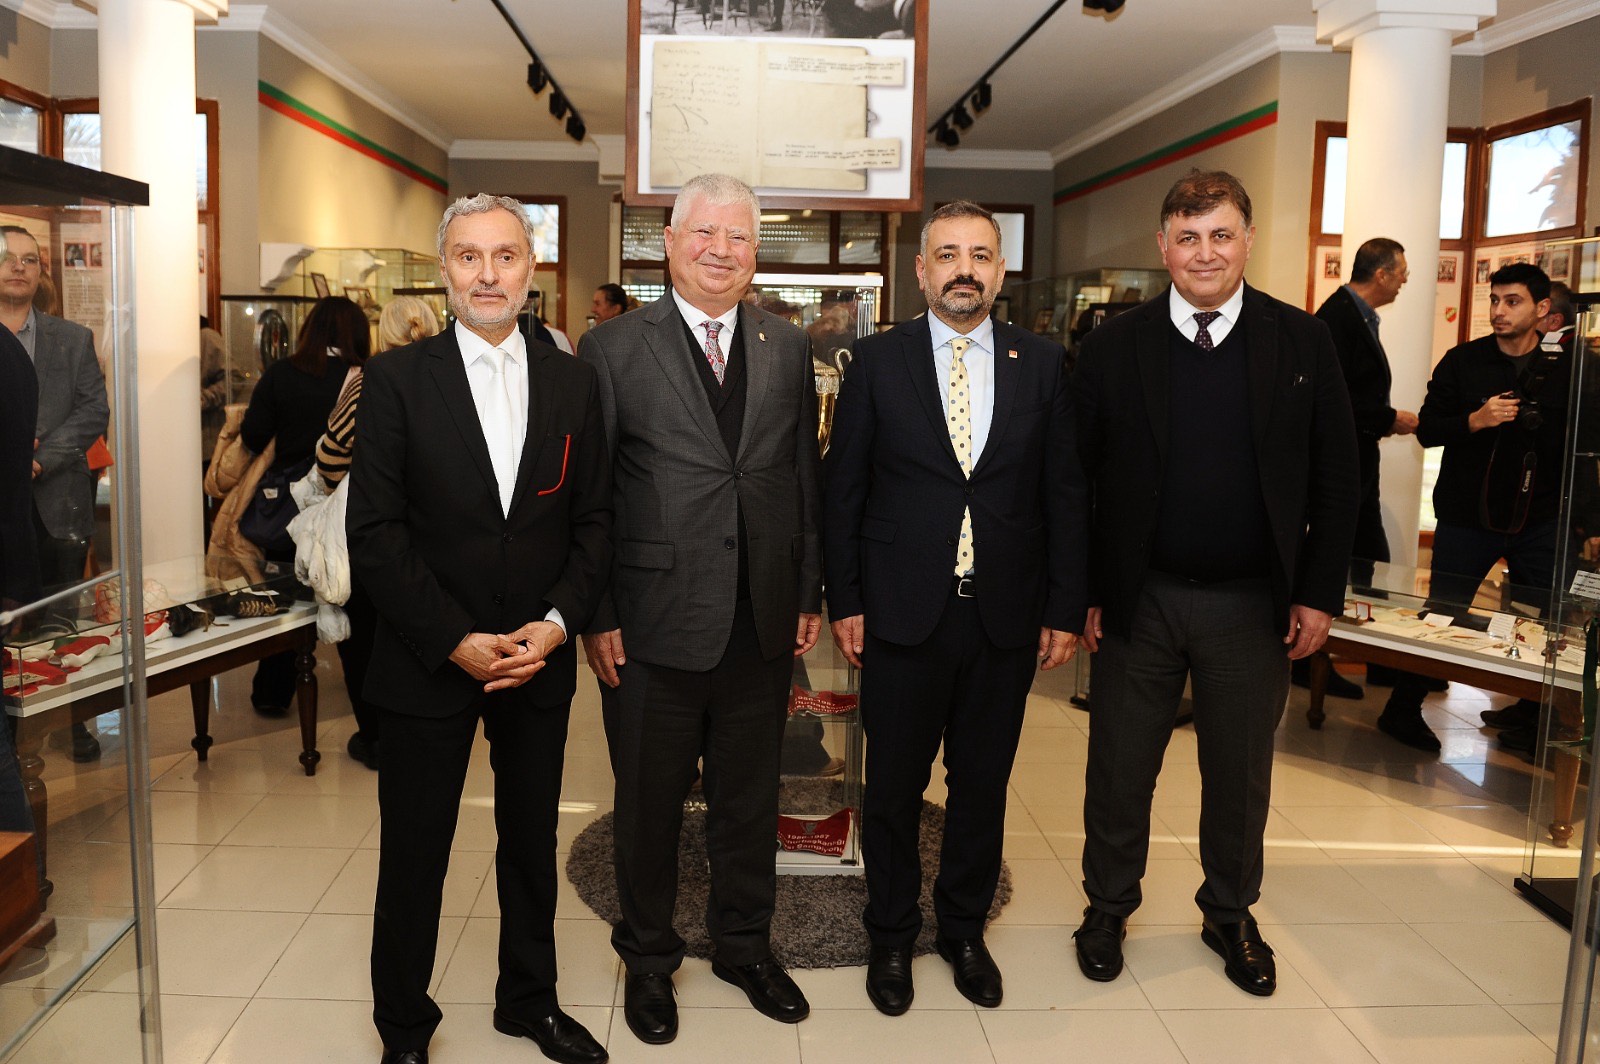 KARŞIYAKA_ İzmir’in 110 yıllık köklü çınarı Karşıyaka Spor Kulübü, tarihinde ilk kez kendisine ait bir müzeye kavuştu.